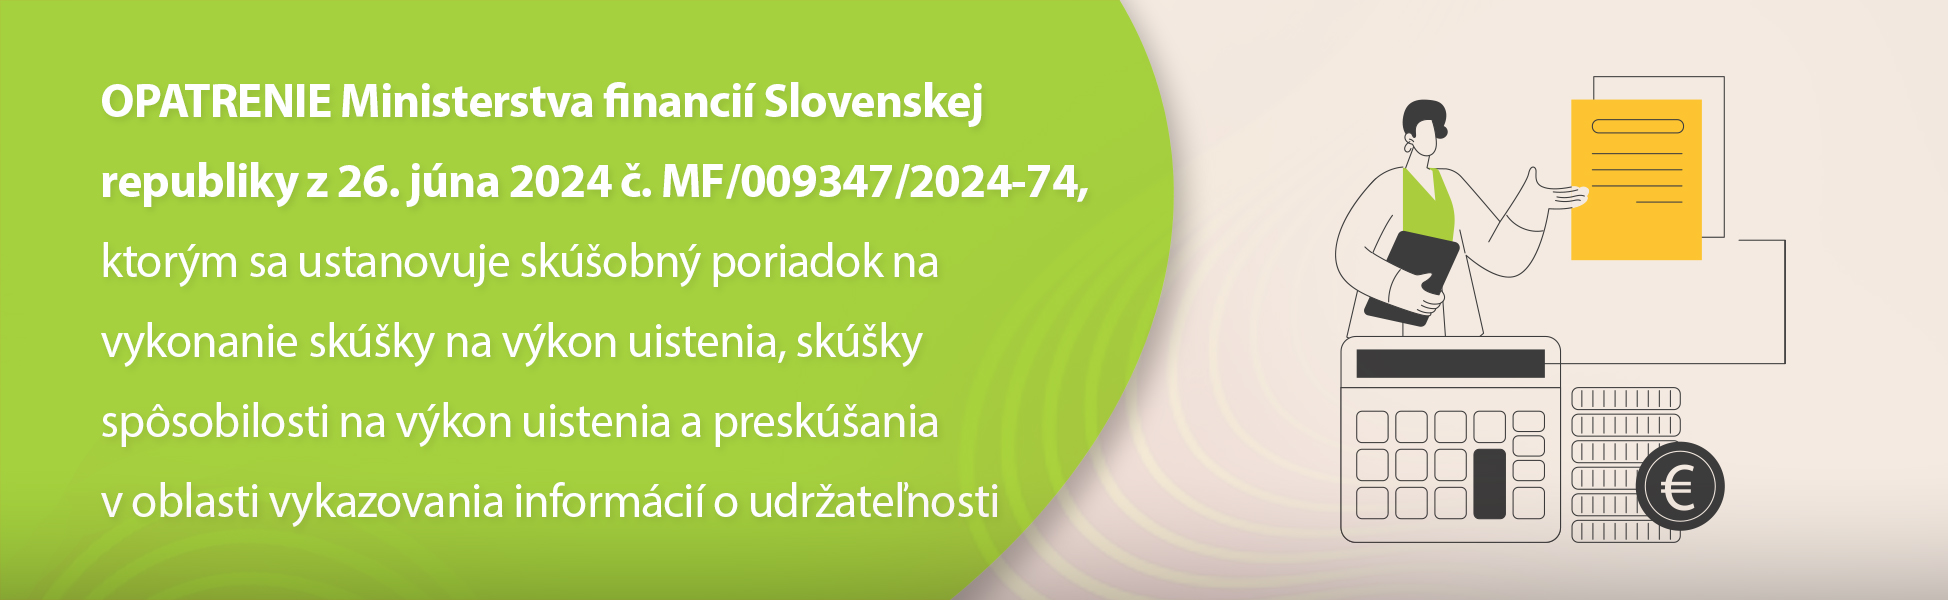 OPATRENIE Ministerstva financi Slovenskej republiky z 26. jna 2024 . MF/009347/2024-74, ktorm sa ustanovuje skobn poriadok na vykonanie skky na vkon uistenia, skky spsobilosti na vkon uistenia a preskania v oblasti vykazovania informci o udratenosti